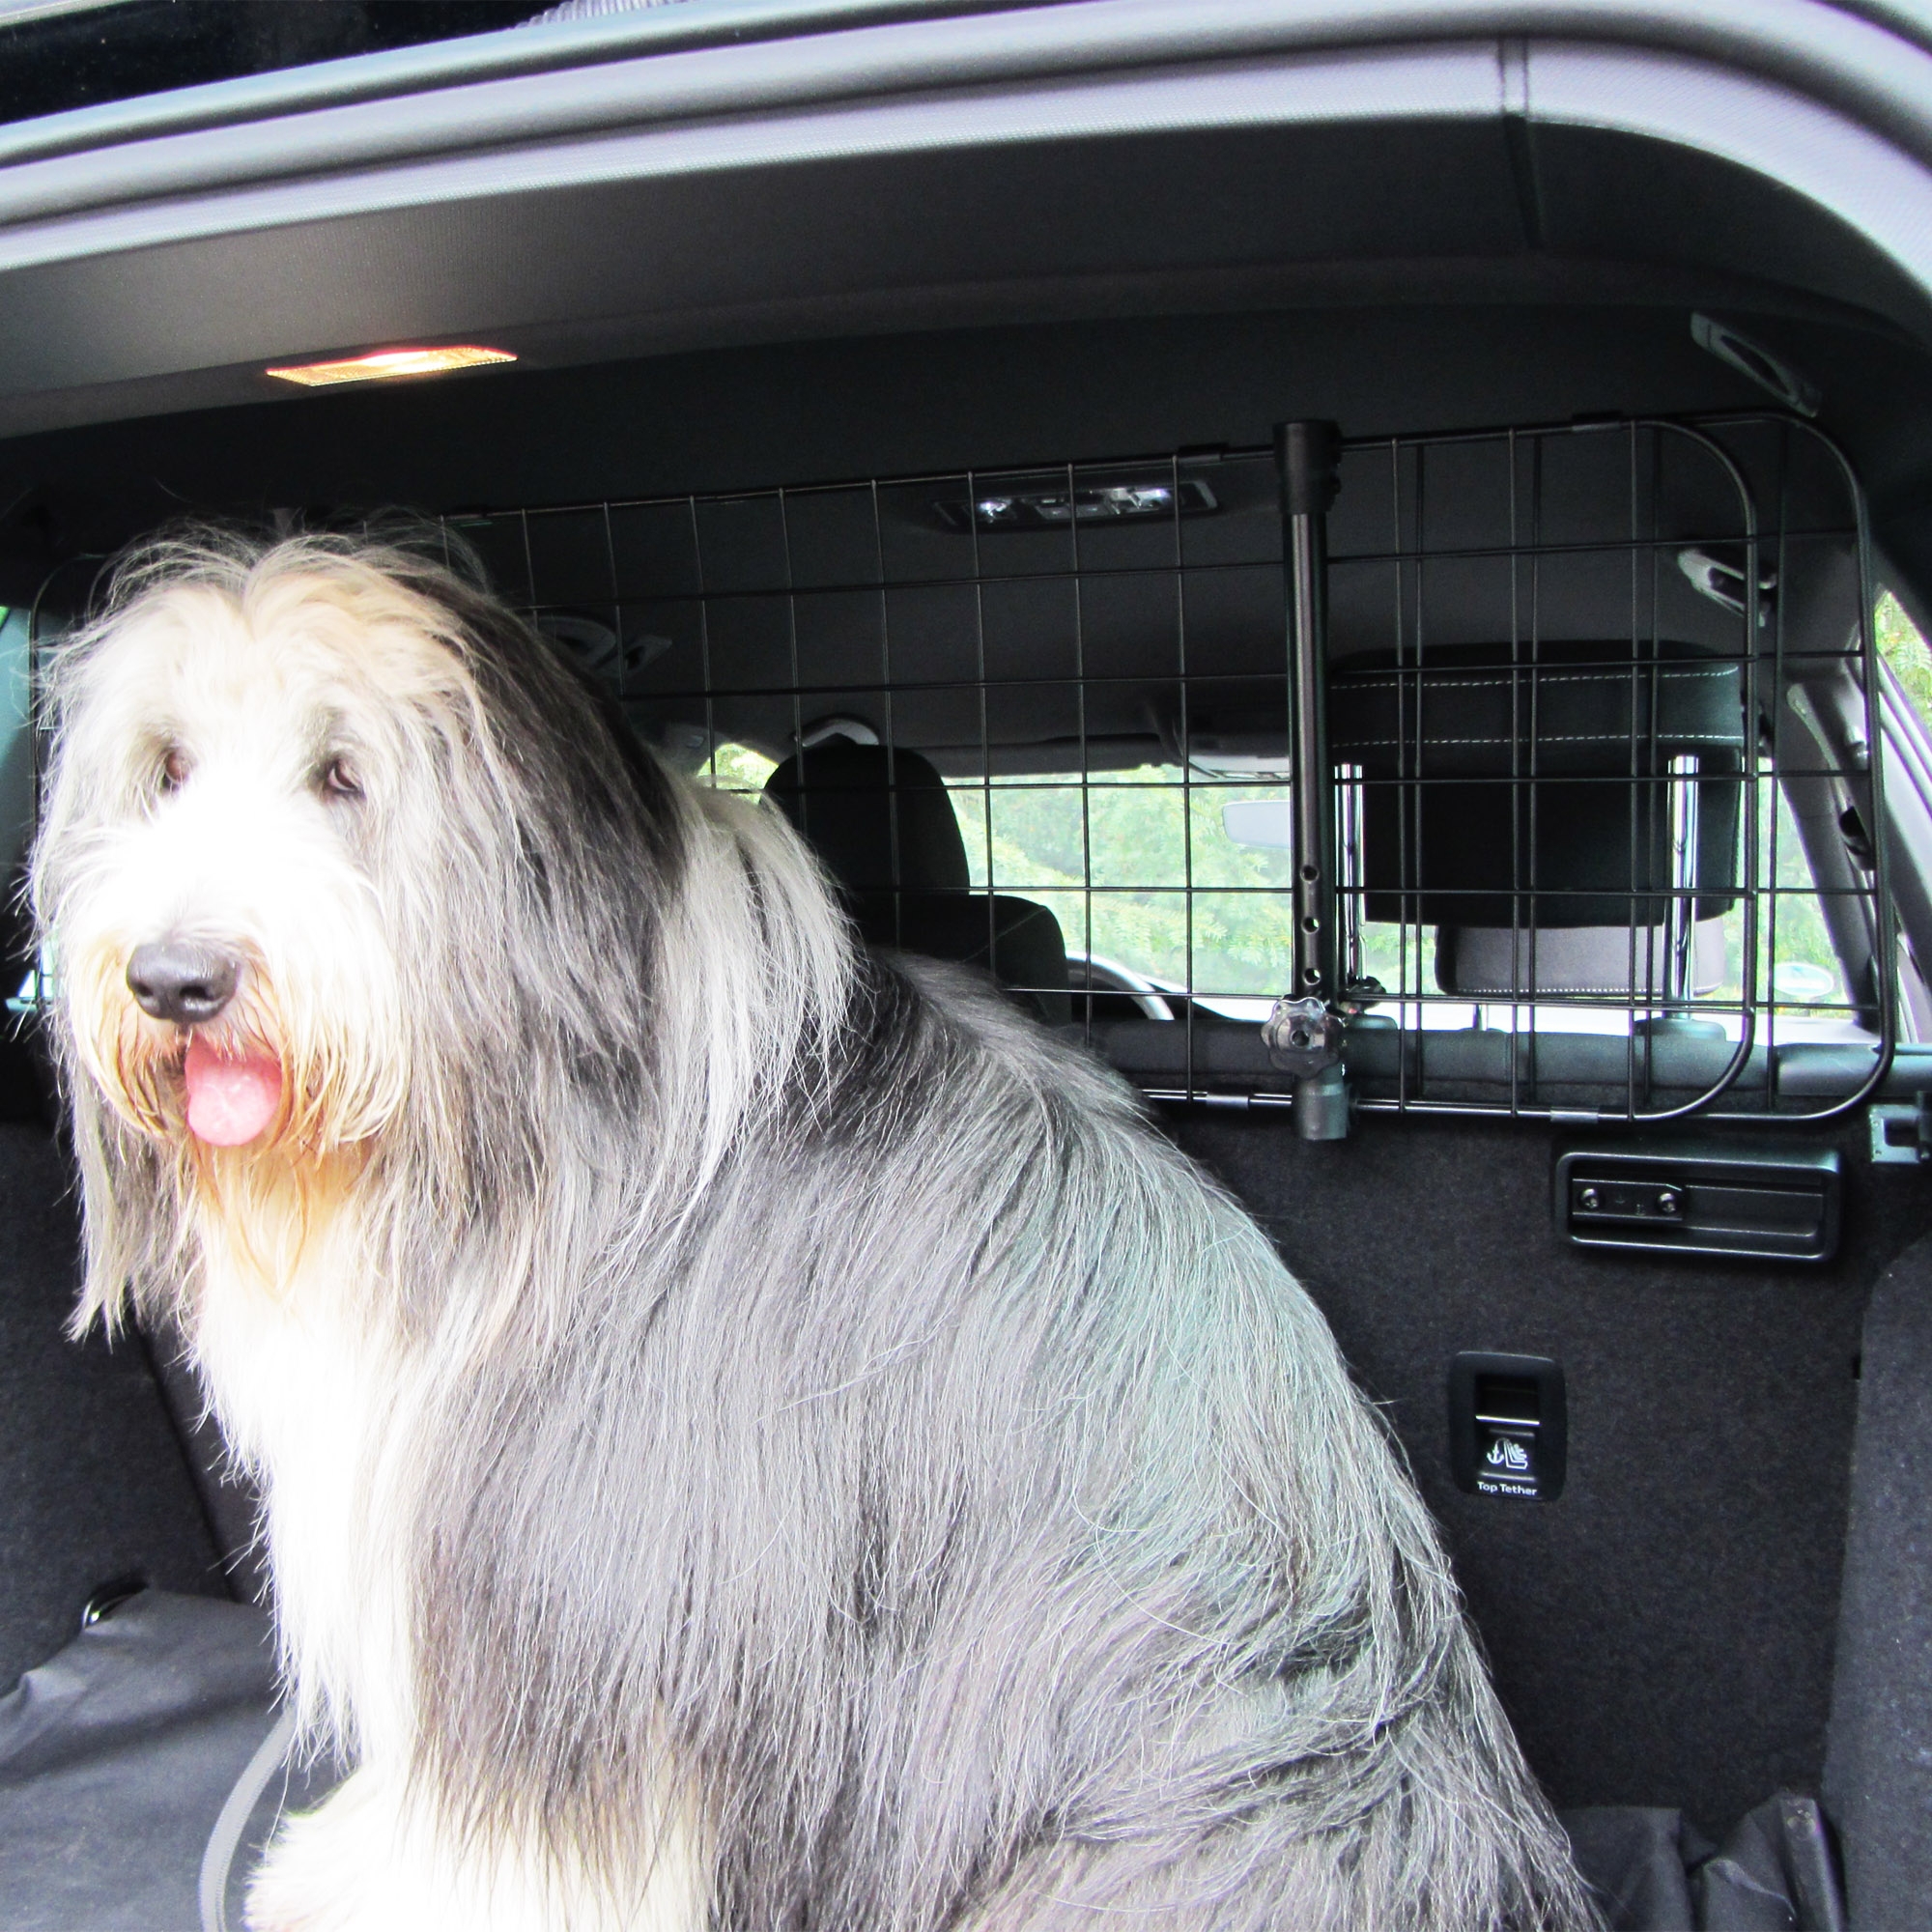 Transportgitter Kofferraumschutz für Hunde für sichere Transportwege NEEZ Kofferraum Schutzgitter für Hund Hundegitter für Auto universal Trenngitter für Auto Universell verstellbar 